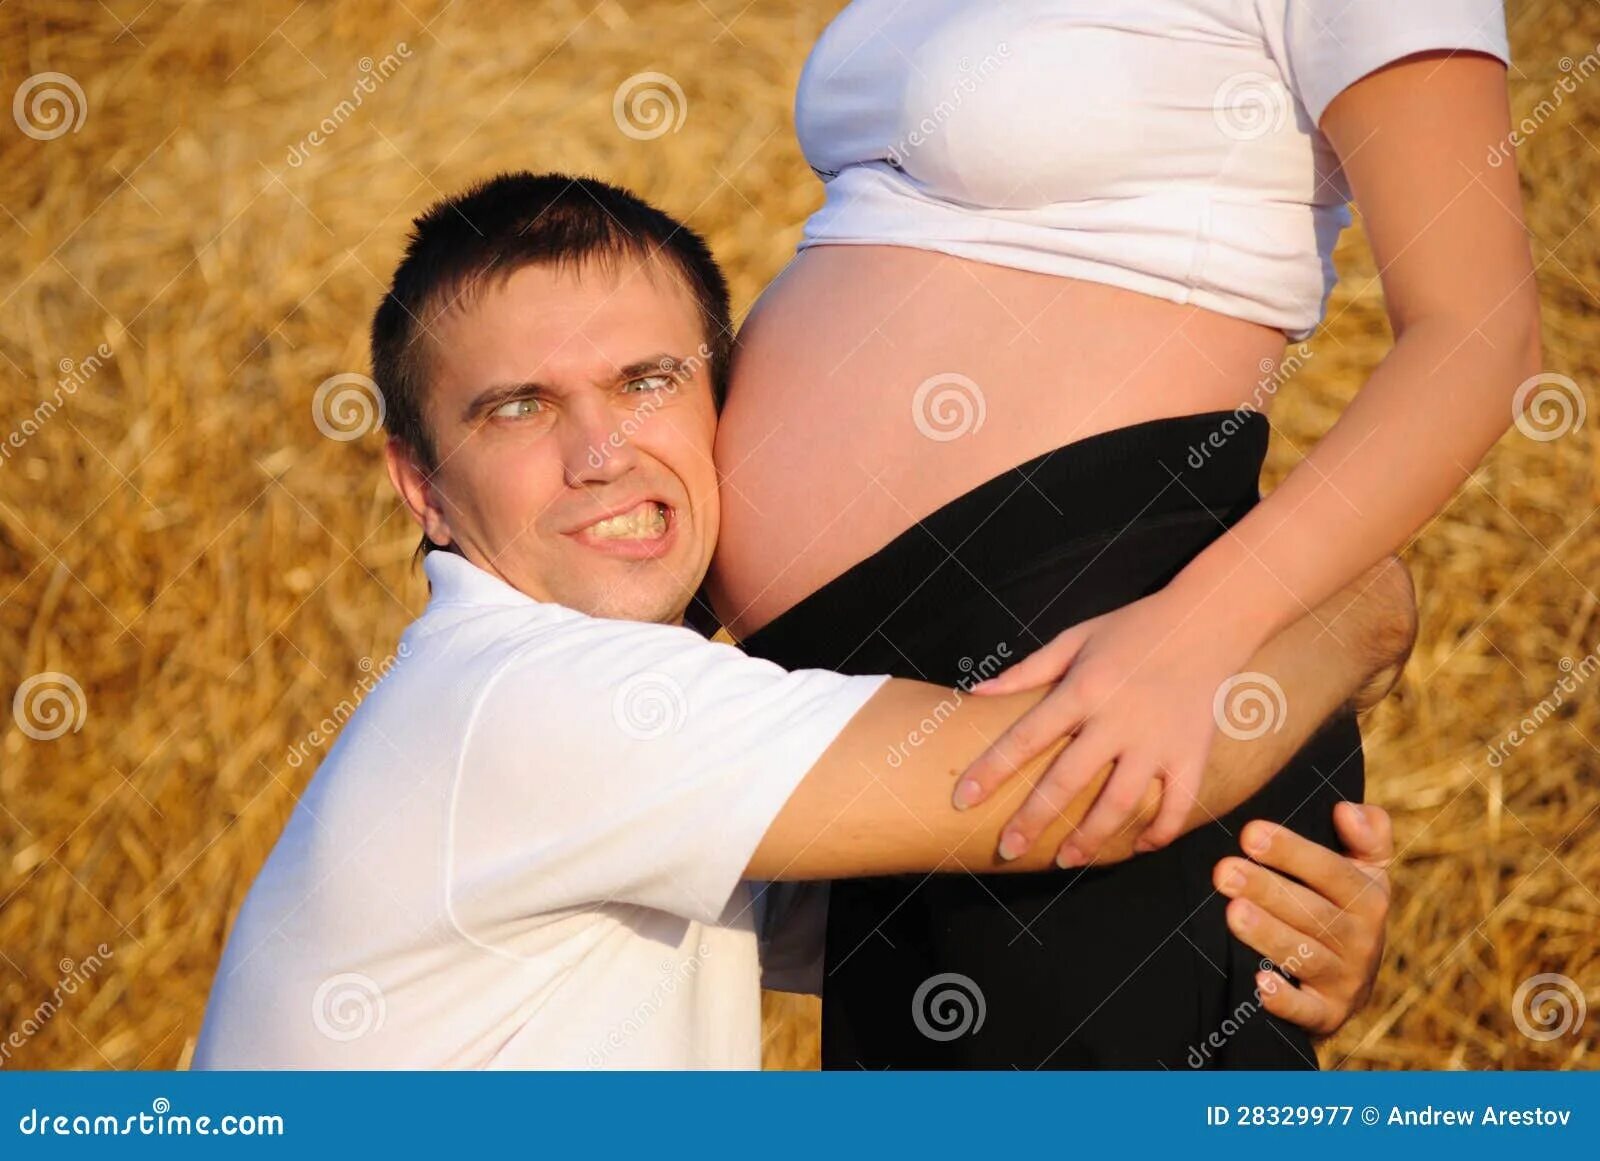 Обнять беременную. Мужчина обнимает беременную. Обнимает живот. Обнимает живот беременной. Мужчина обнимает животик.